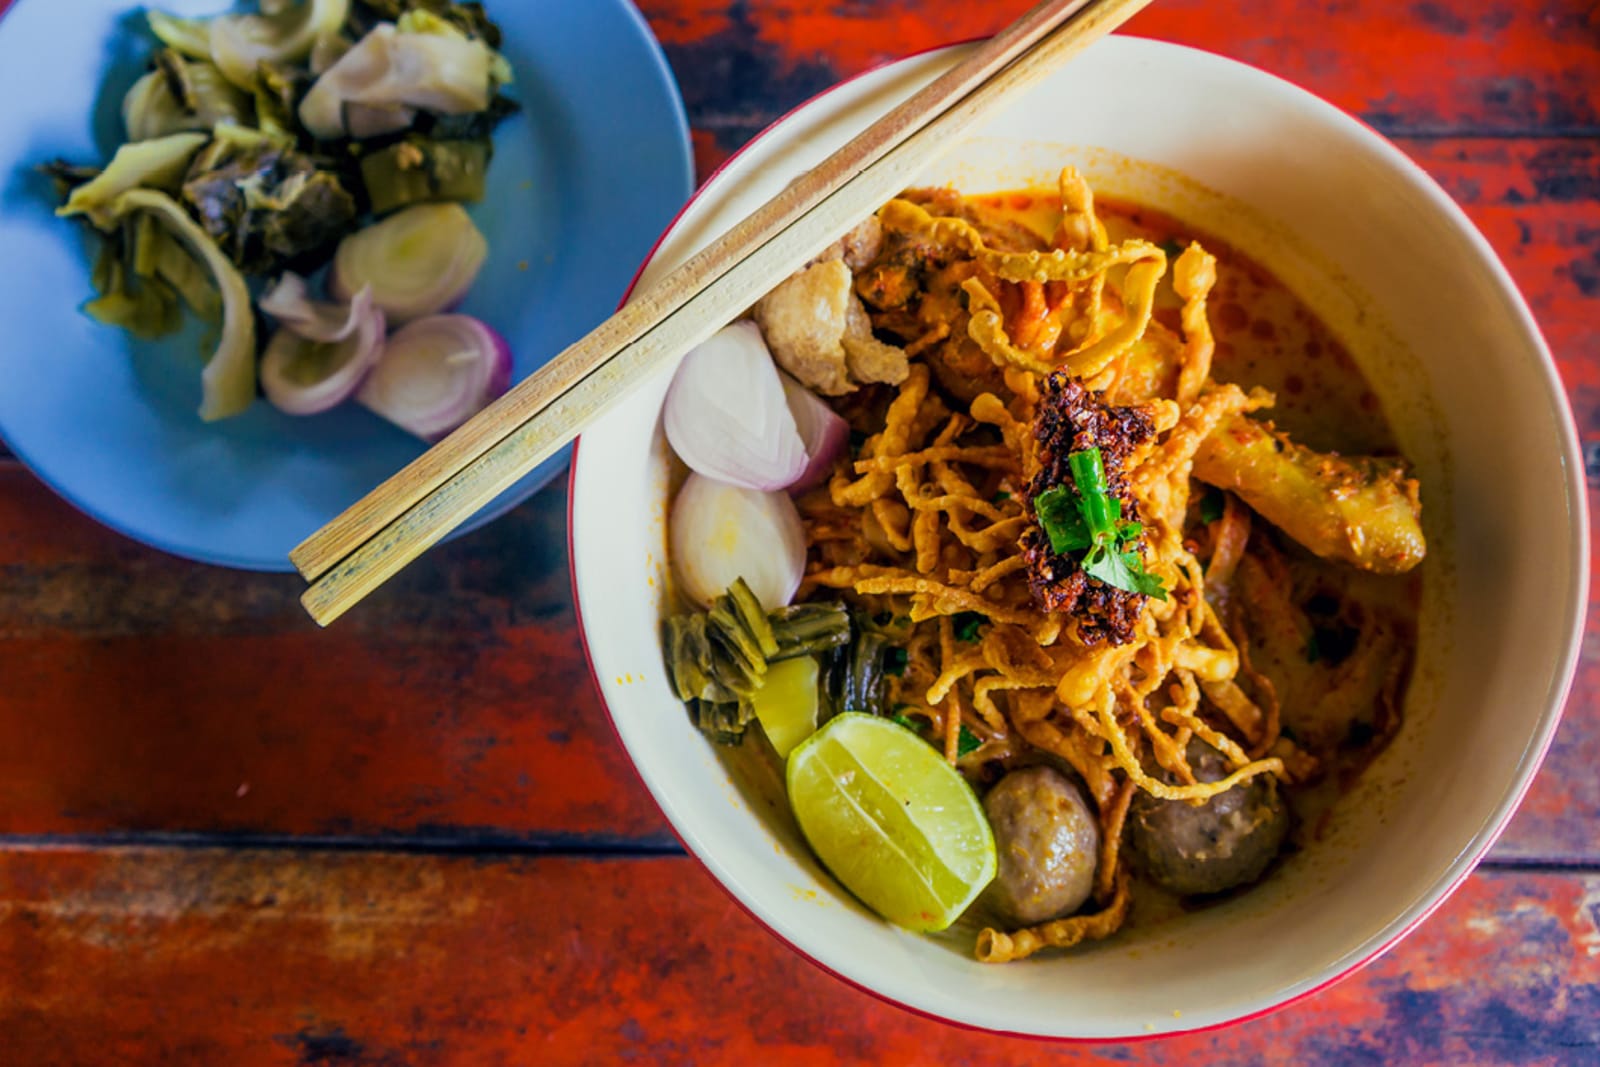 Some describe khao soi as "heaven in a bowl"